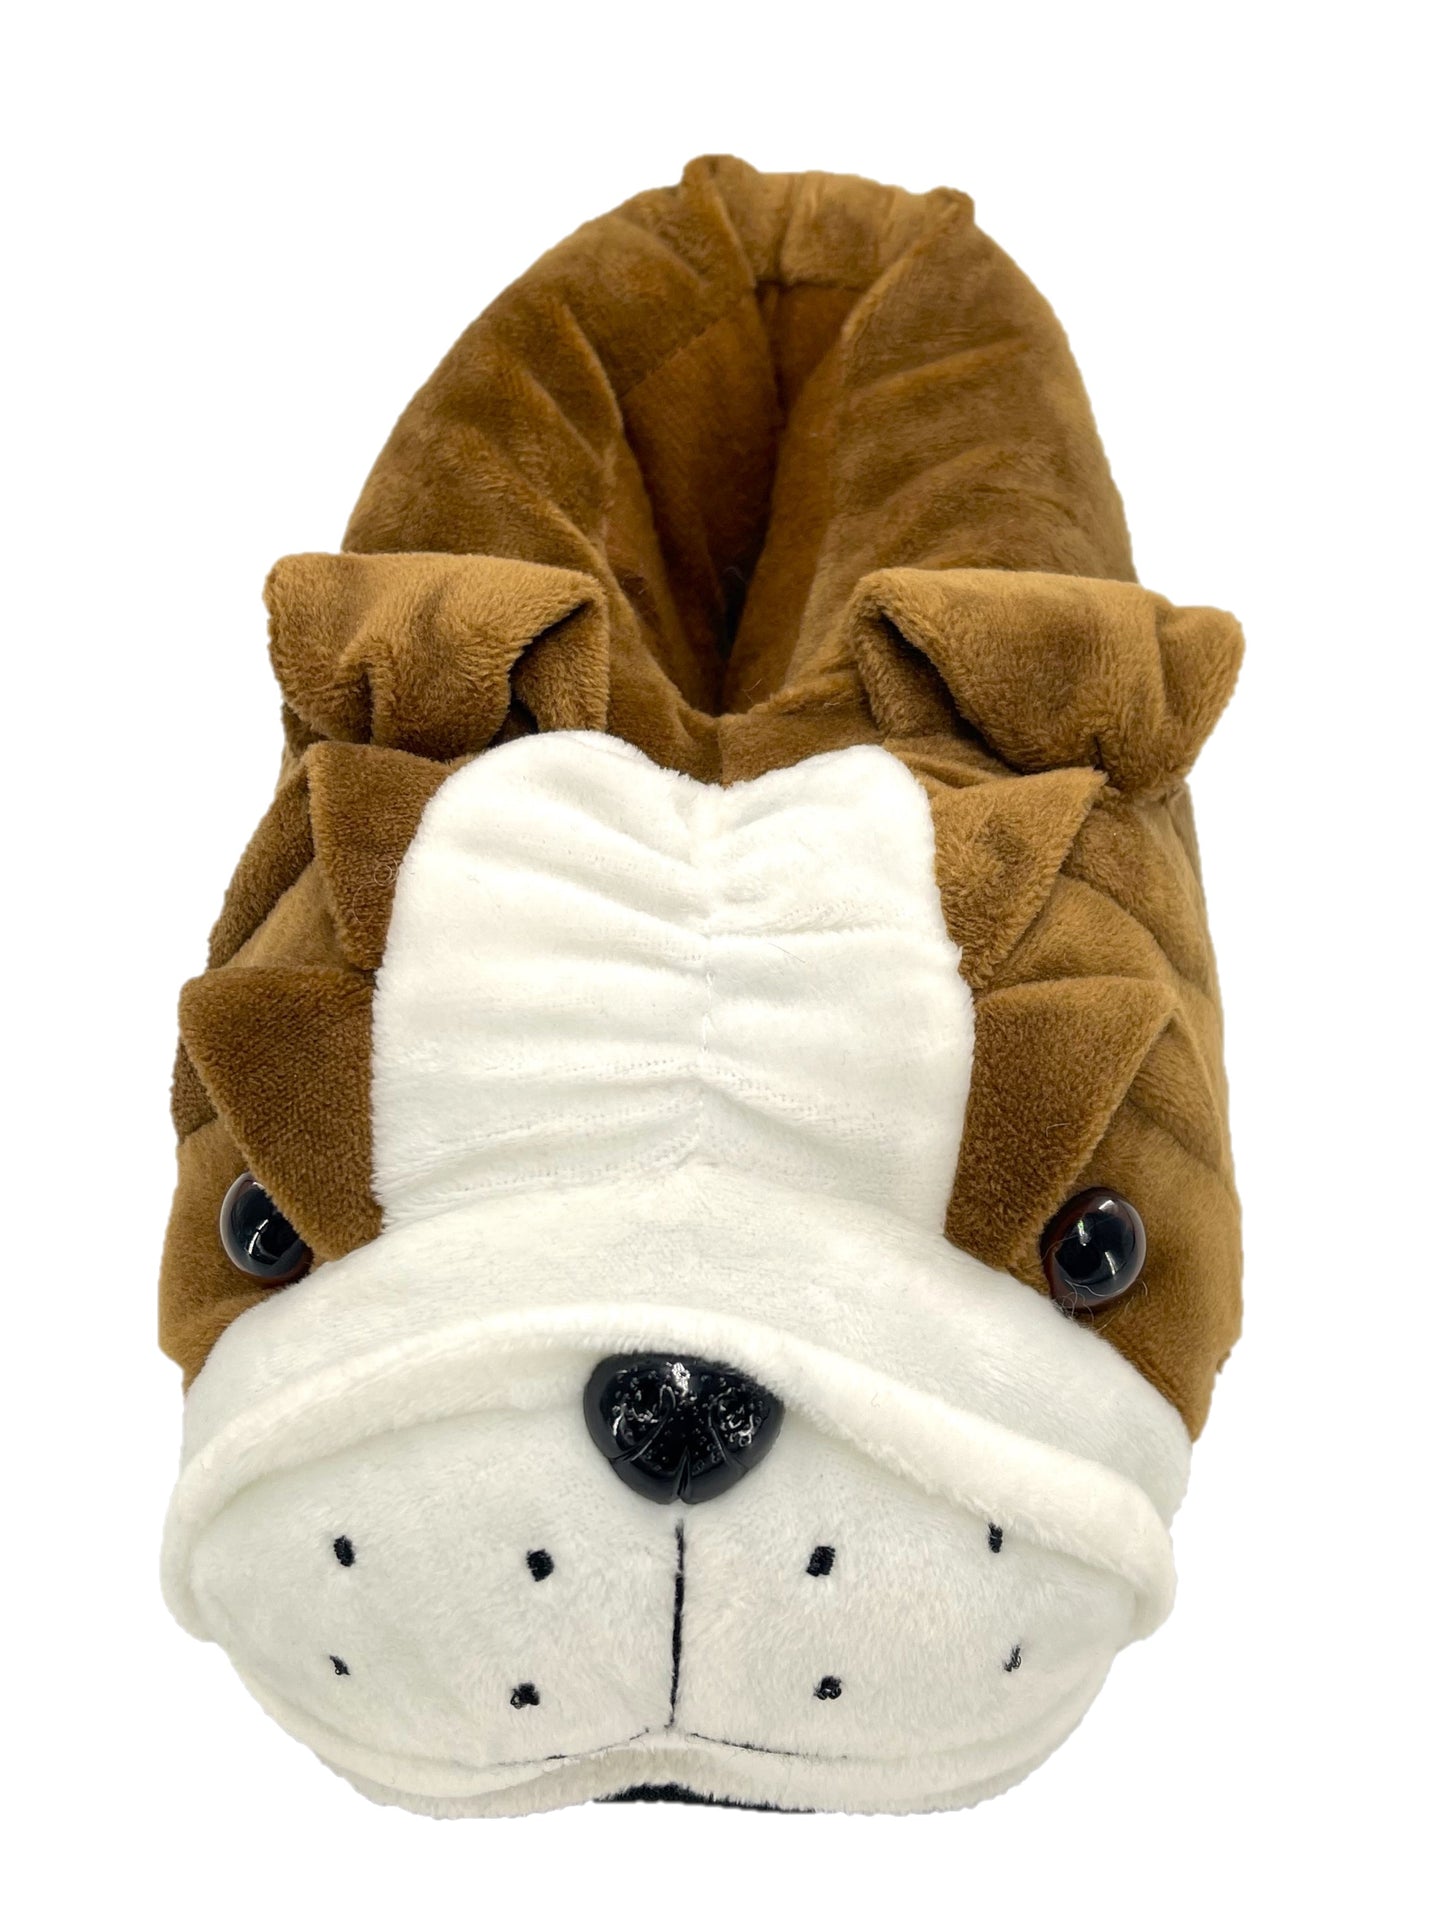 Men's Bulldog Slippers Novelty 3D Brown and White Plush